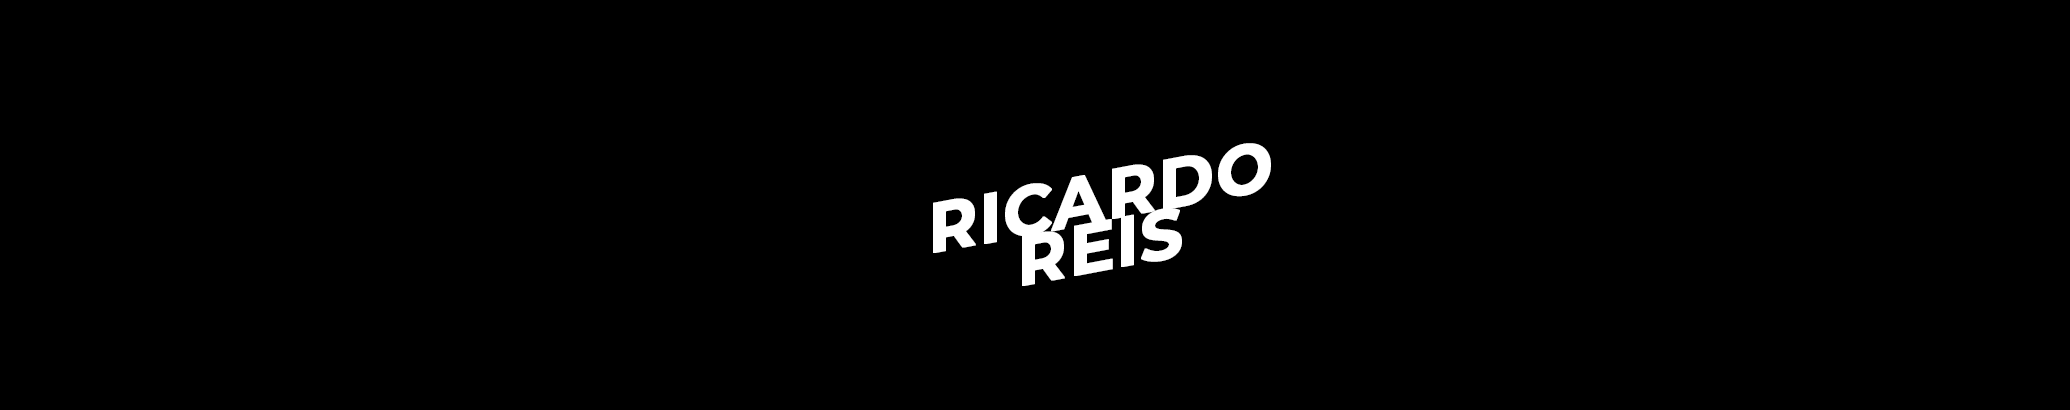 Ricardo Reis のプロファイルバナー